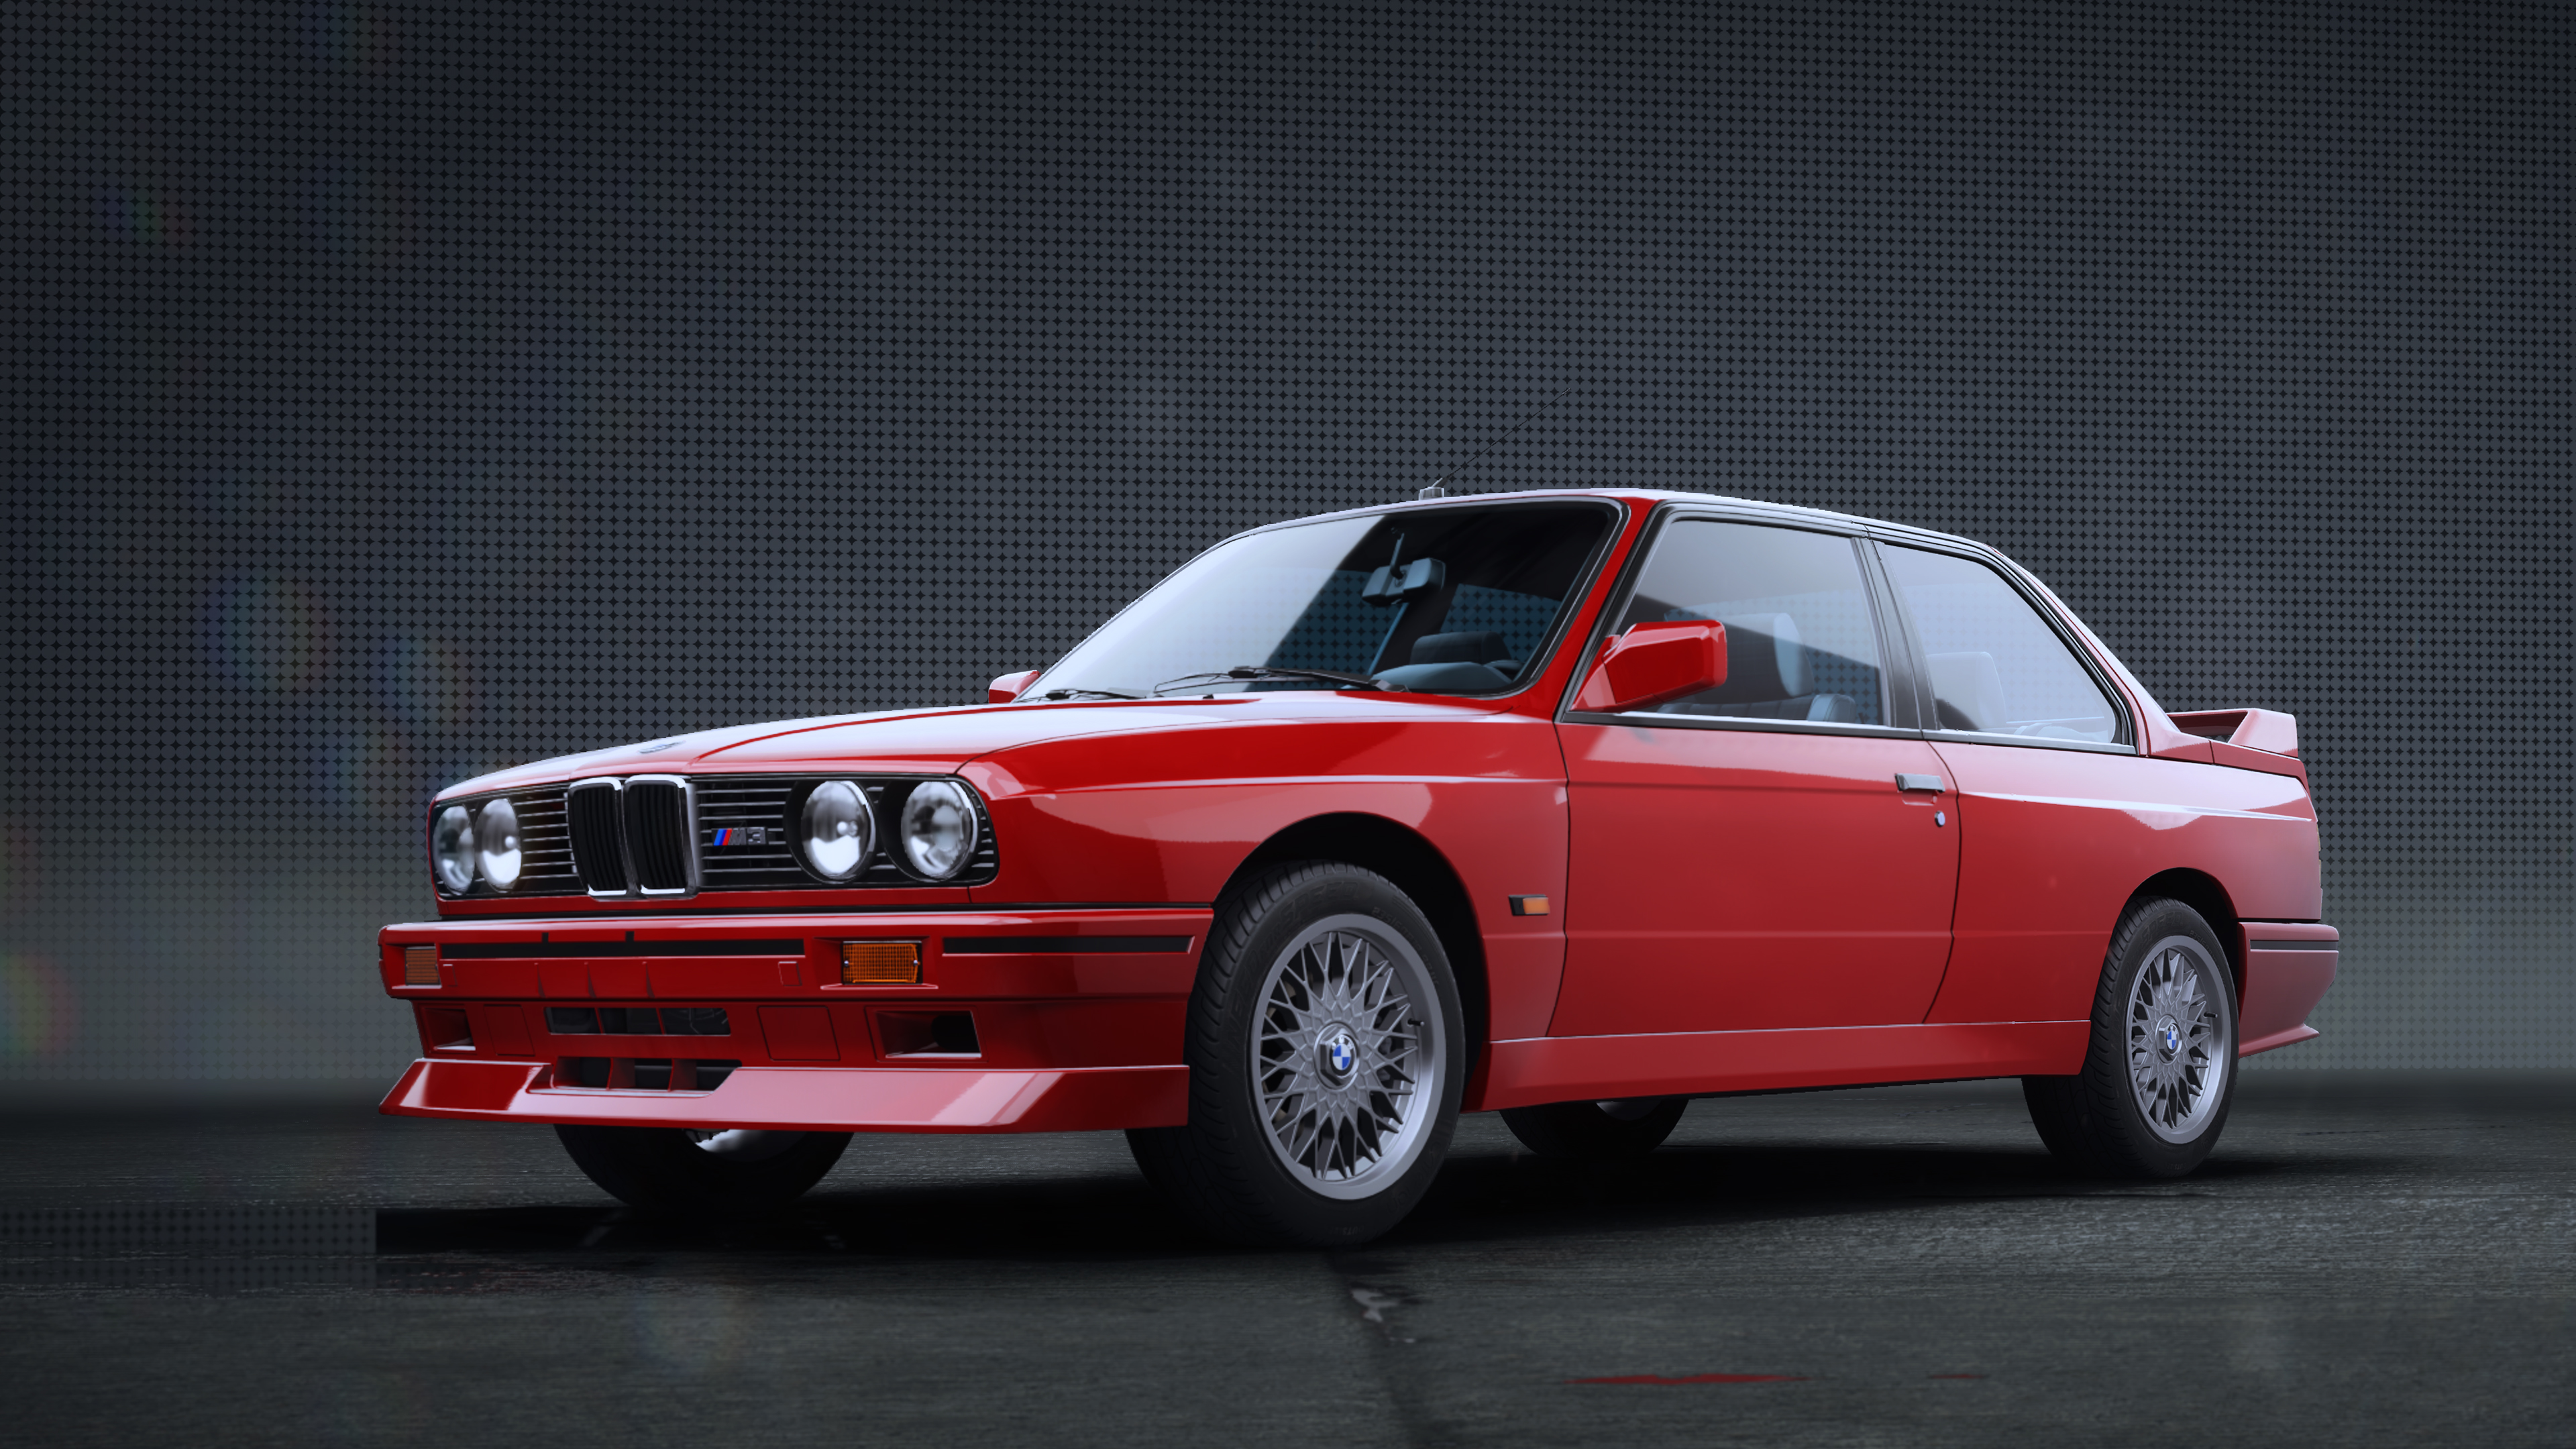 BMW Série 3 (E30) — Wikipédia